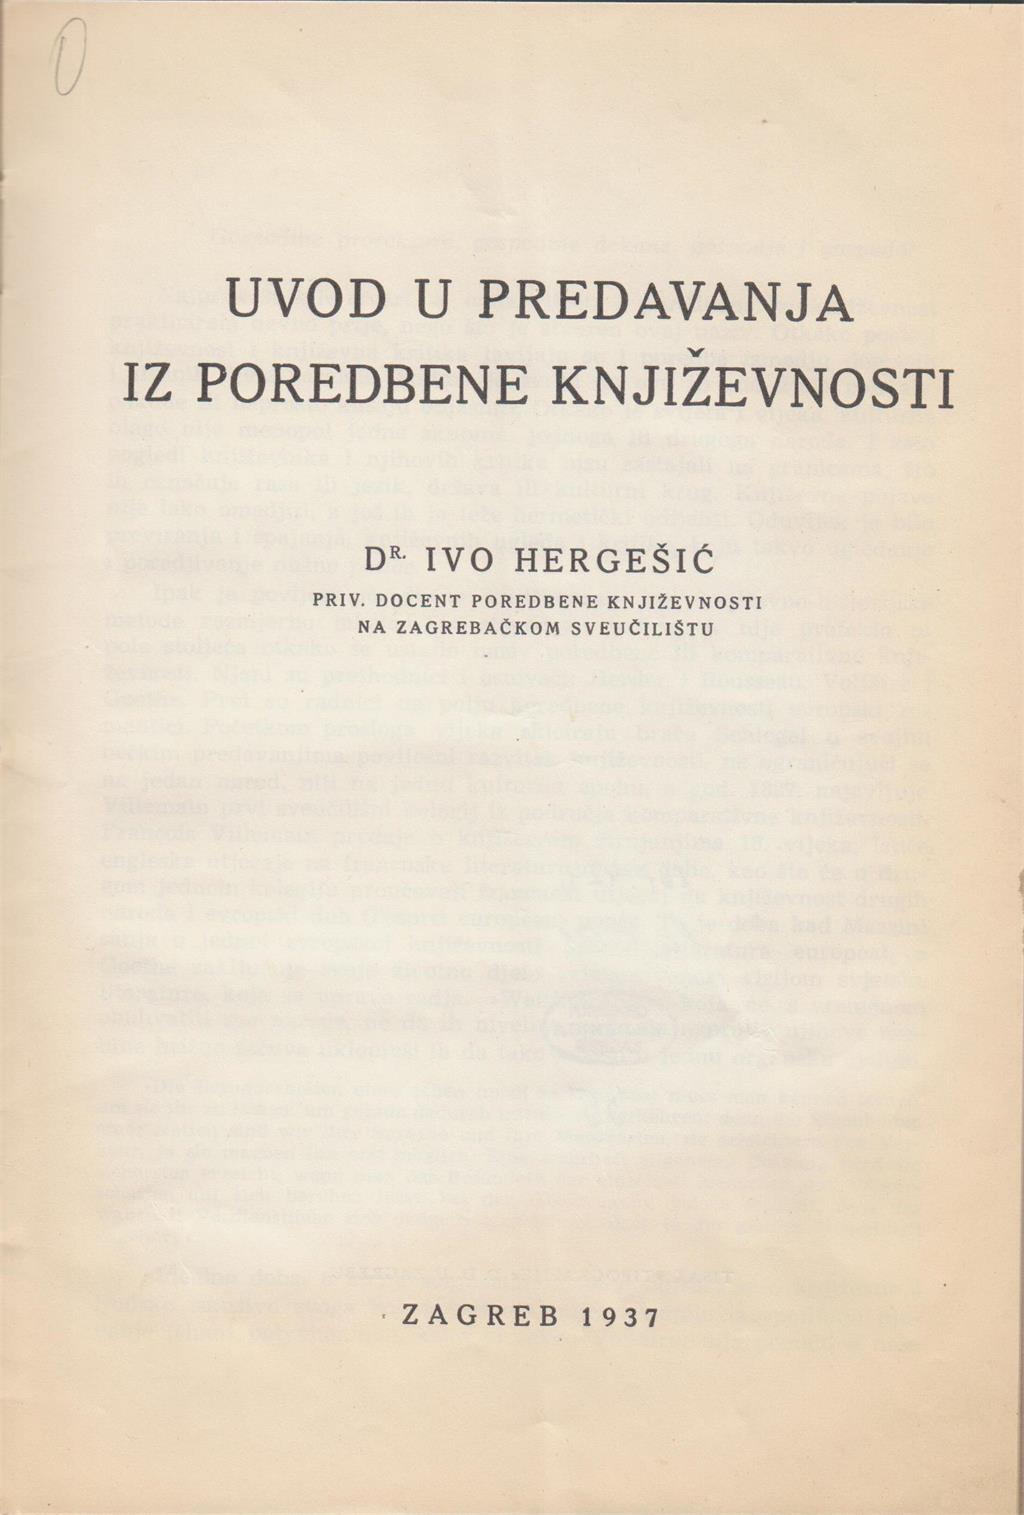 Ivo Hergešić (23. srpnja 1904. – 29. prosinca 1977.)